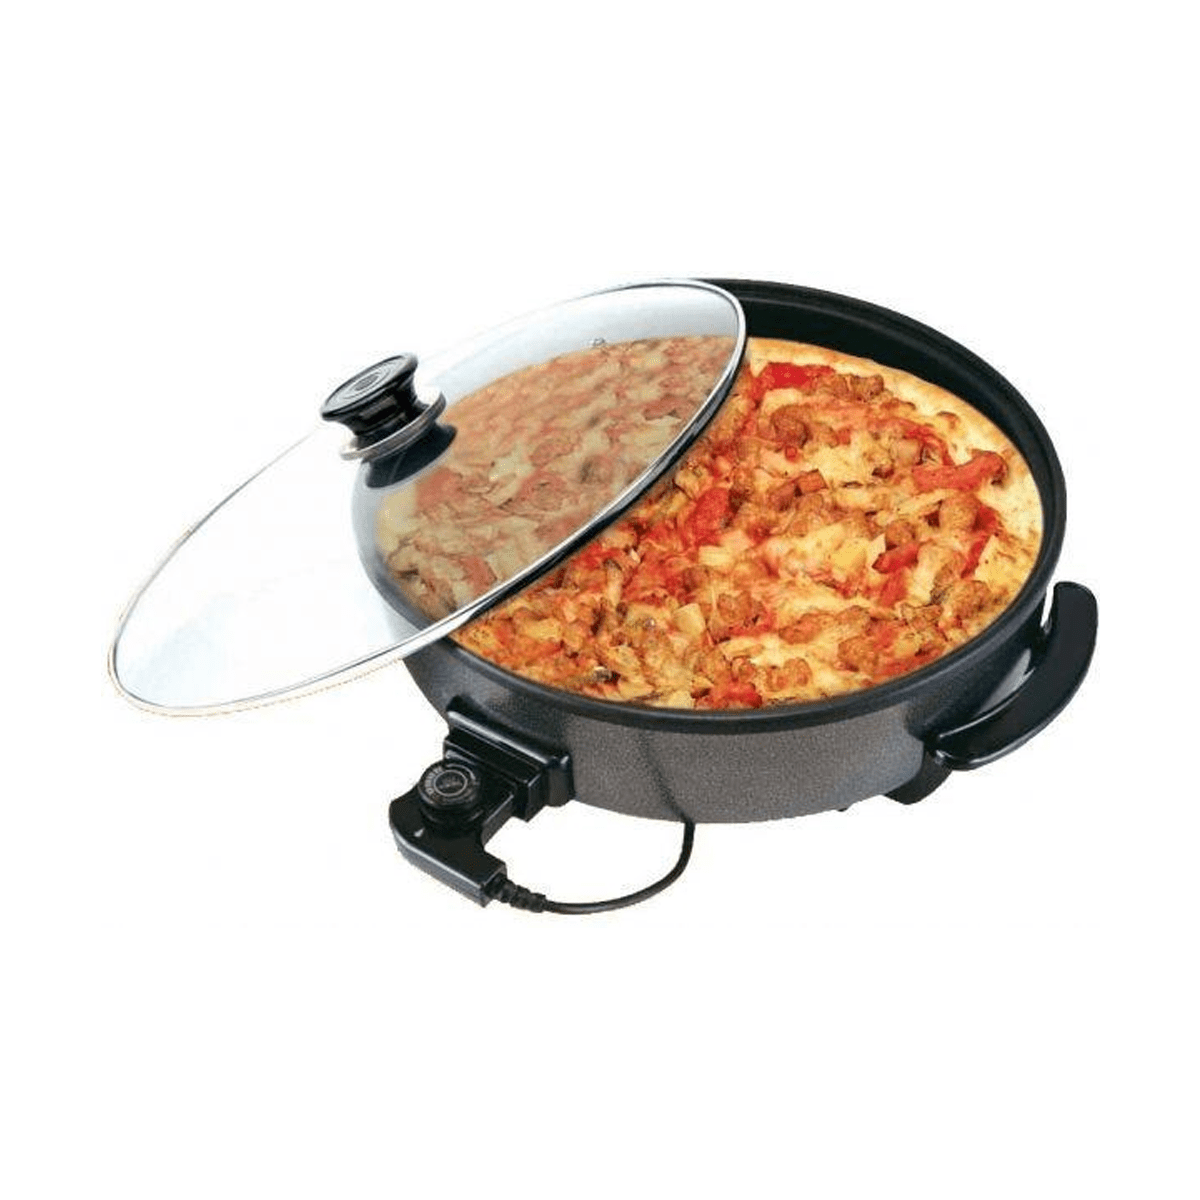 BM Satellite Pizza Maker - BM-102, Black - SquareDubai